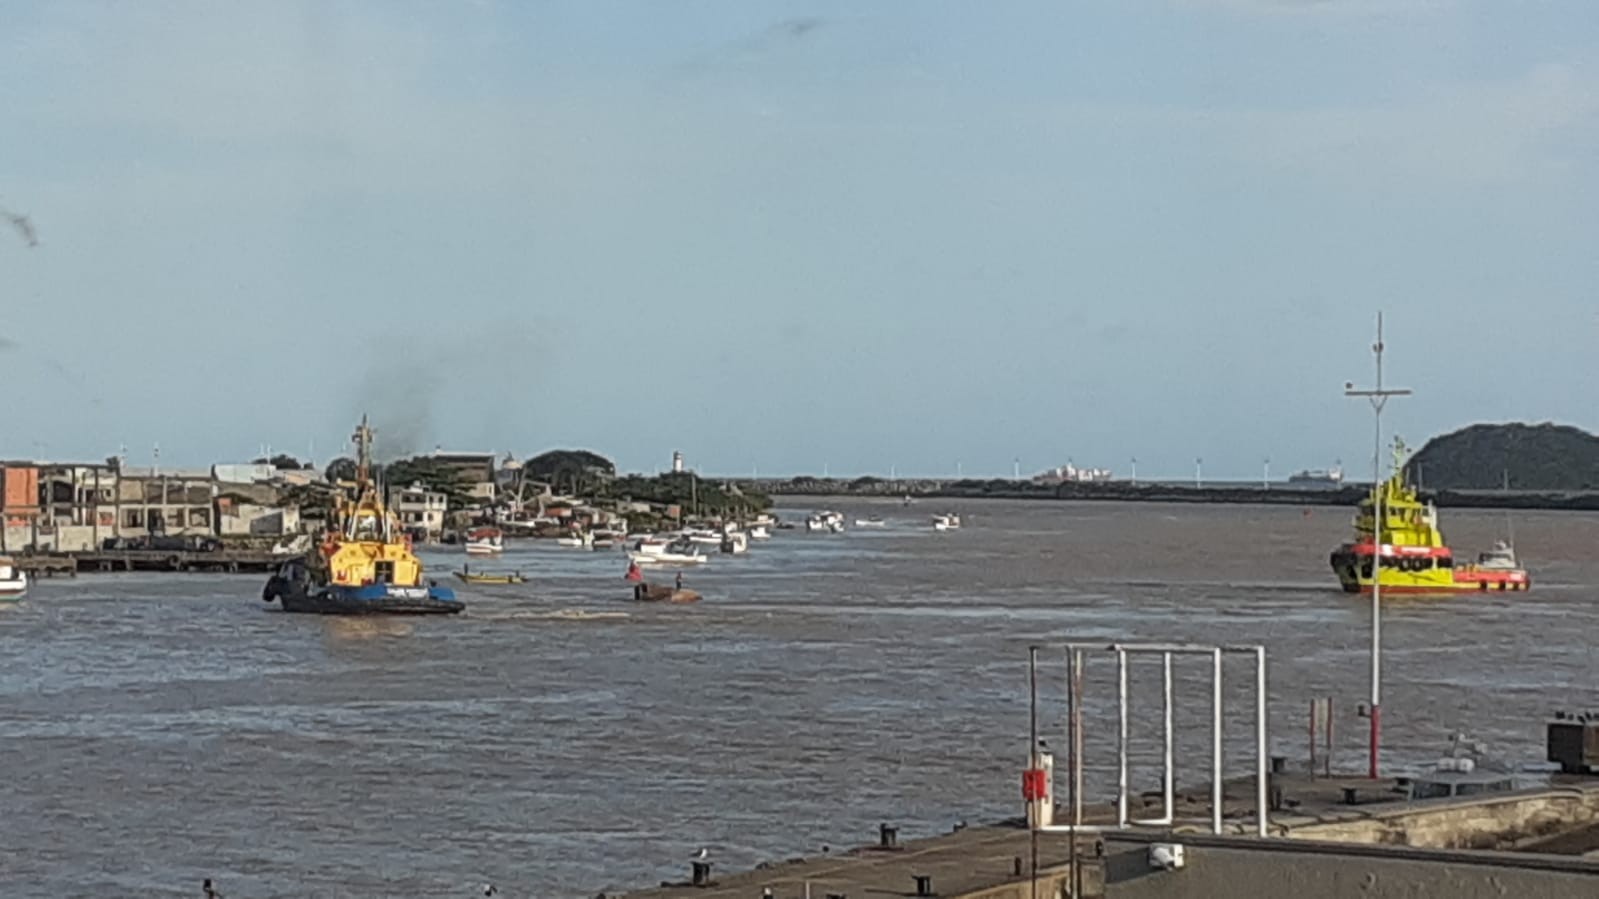 Canal de acesso aos portos de Itajaí e Navegantes é fechado após acidente com barco de pesca